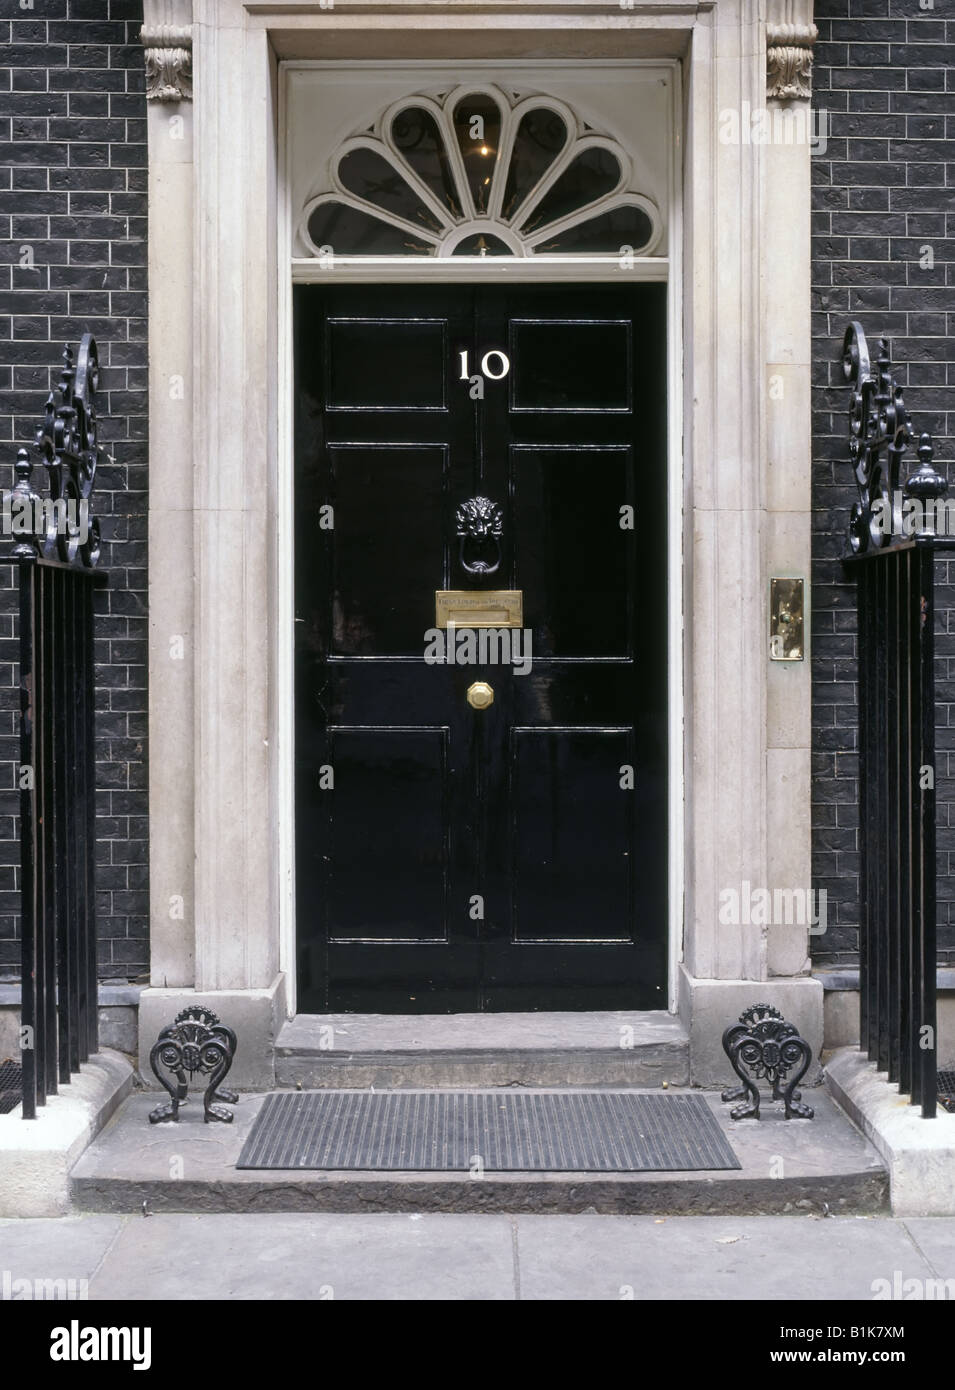 Nahaufnahme des schwarzen Eingangs der Downing Street 10 zur offiziellen Residenz des Premierministers im Bezirk Whitehall Westminster London England Großbritannien Stockfoto